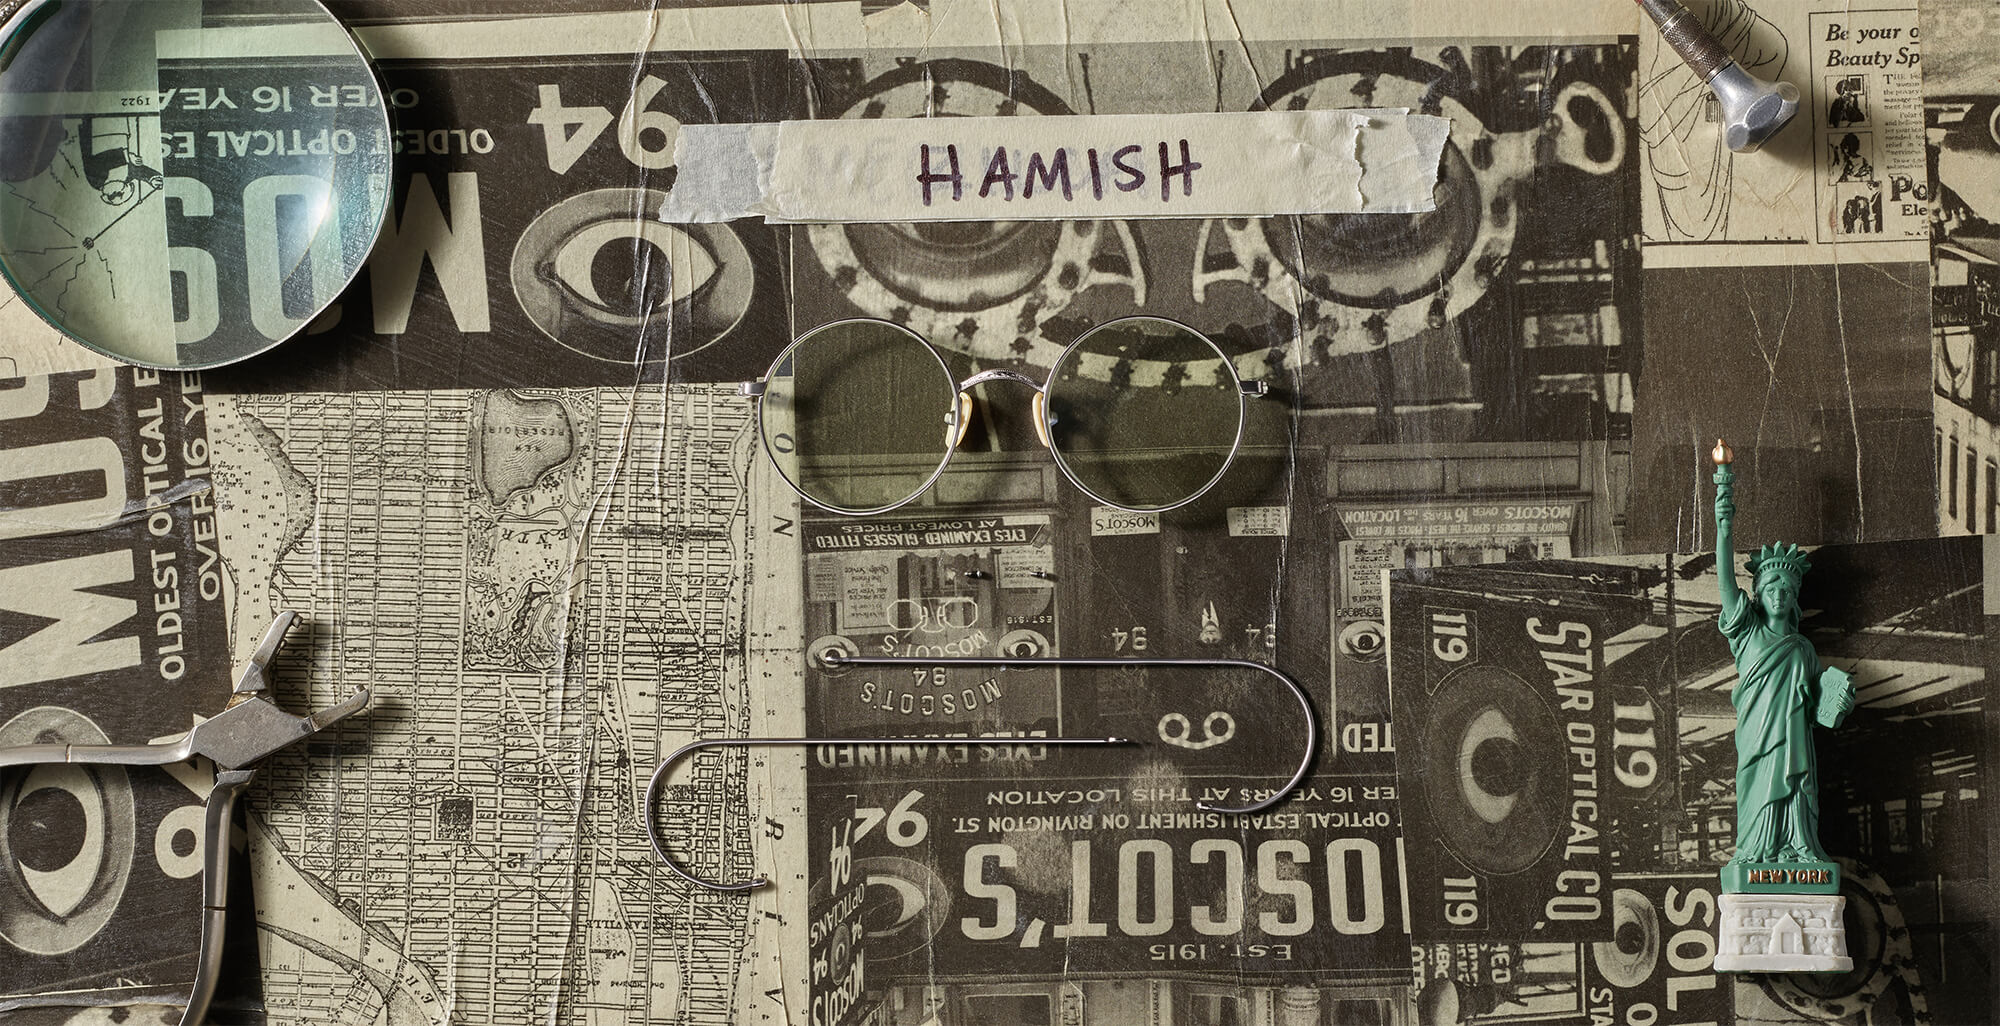 The HAMISH